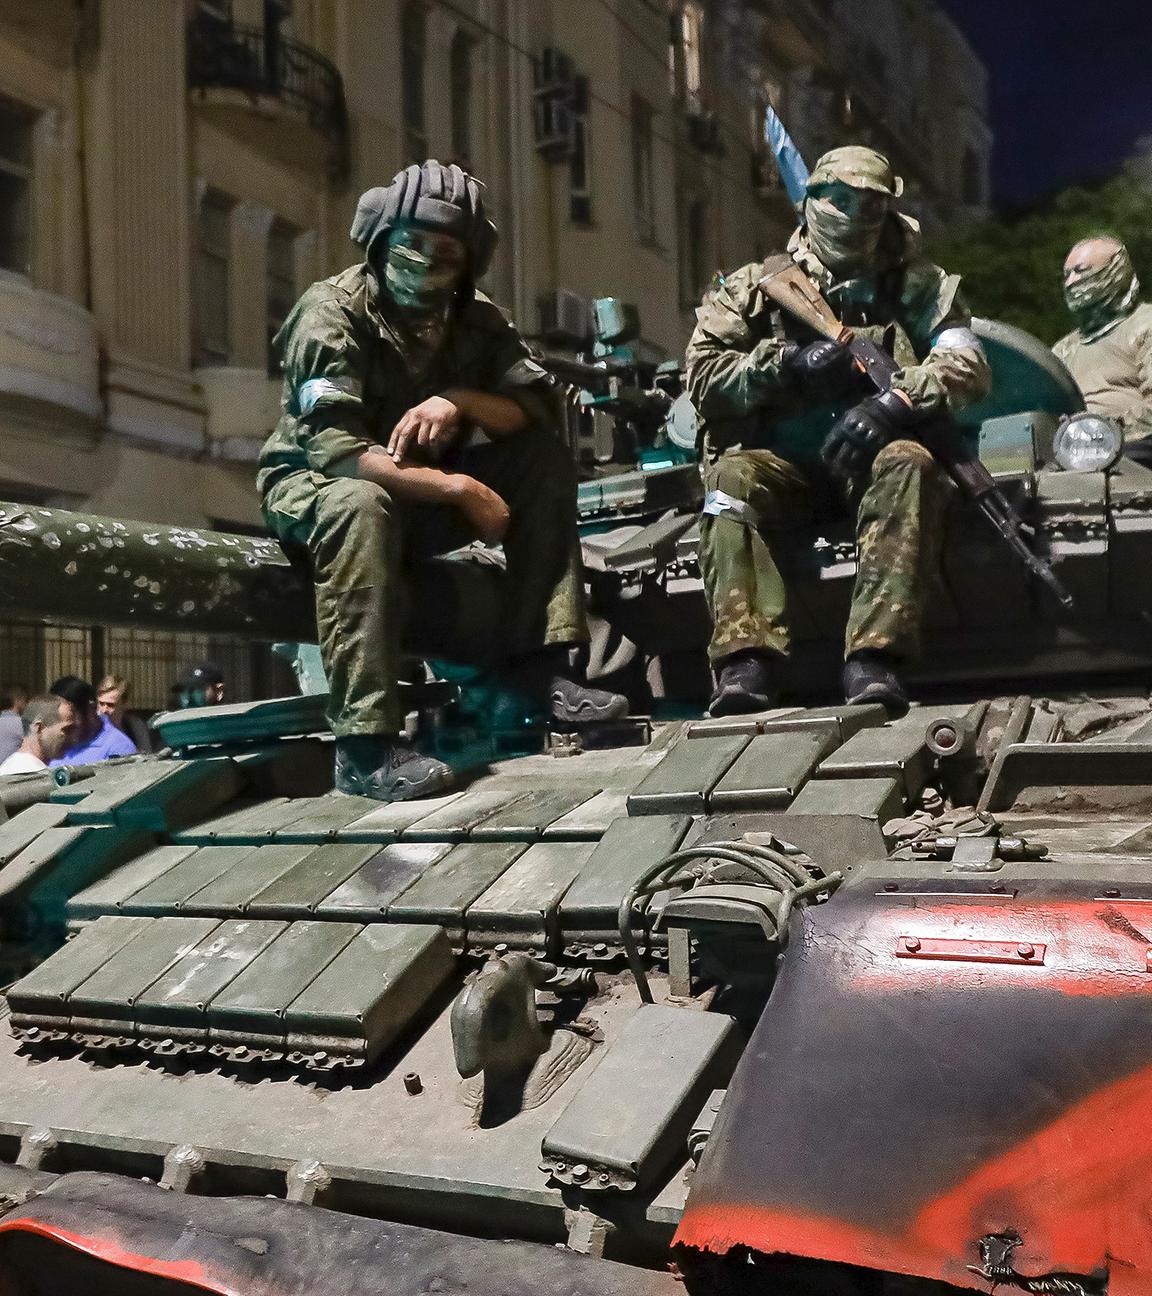 Angehörige der Wagner Group sitzen auf einem Panzer auf einer Straße in Rostow am Don, Russland